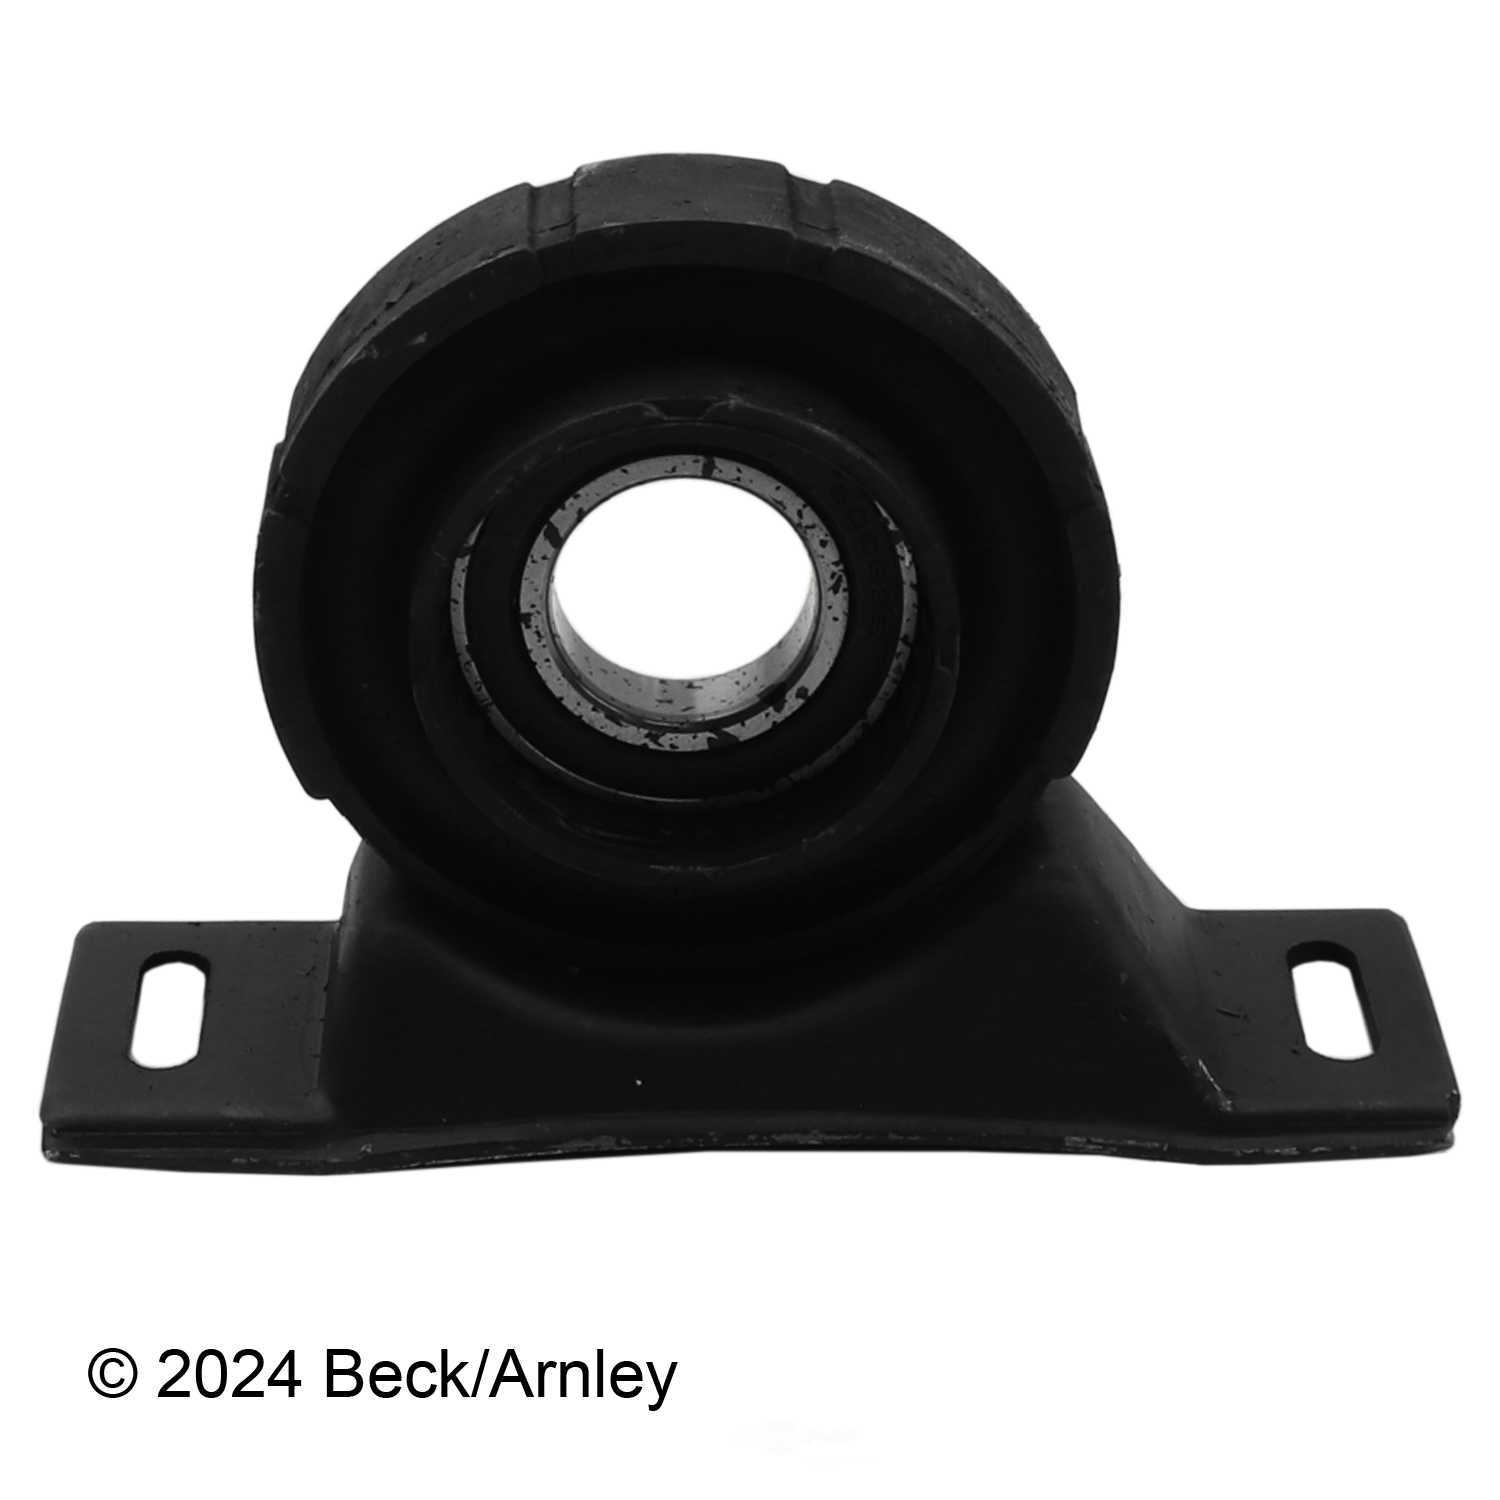 BECK/ARNLEY - Drive Shaft Center Support Bearing - BAR 101-4436